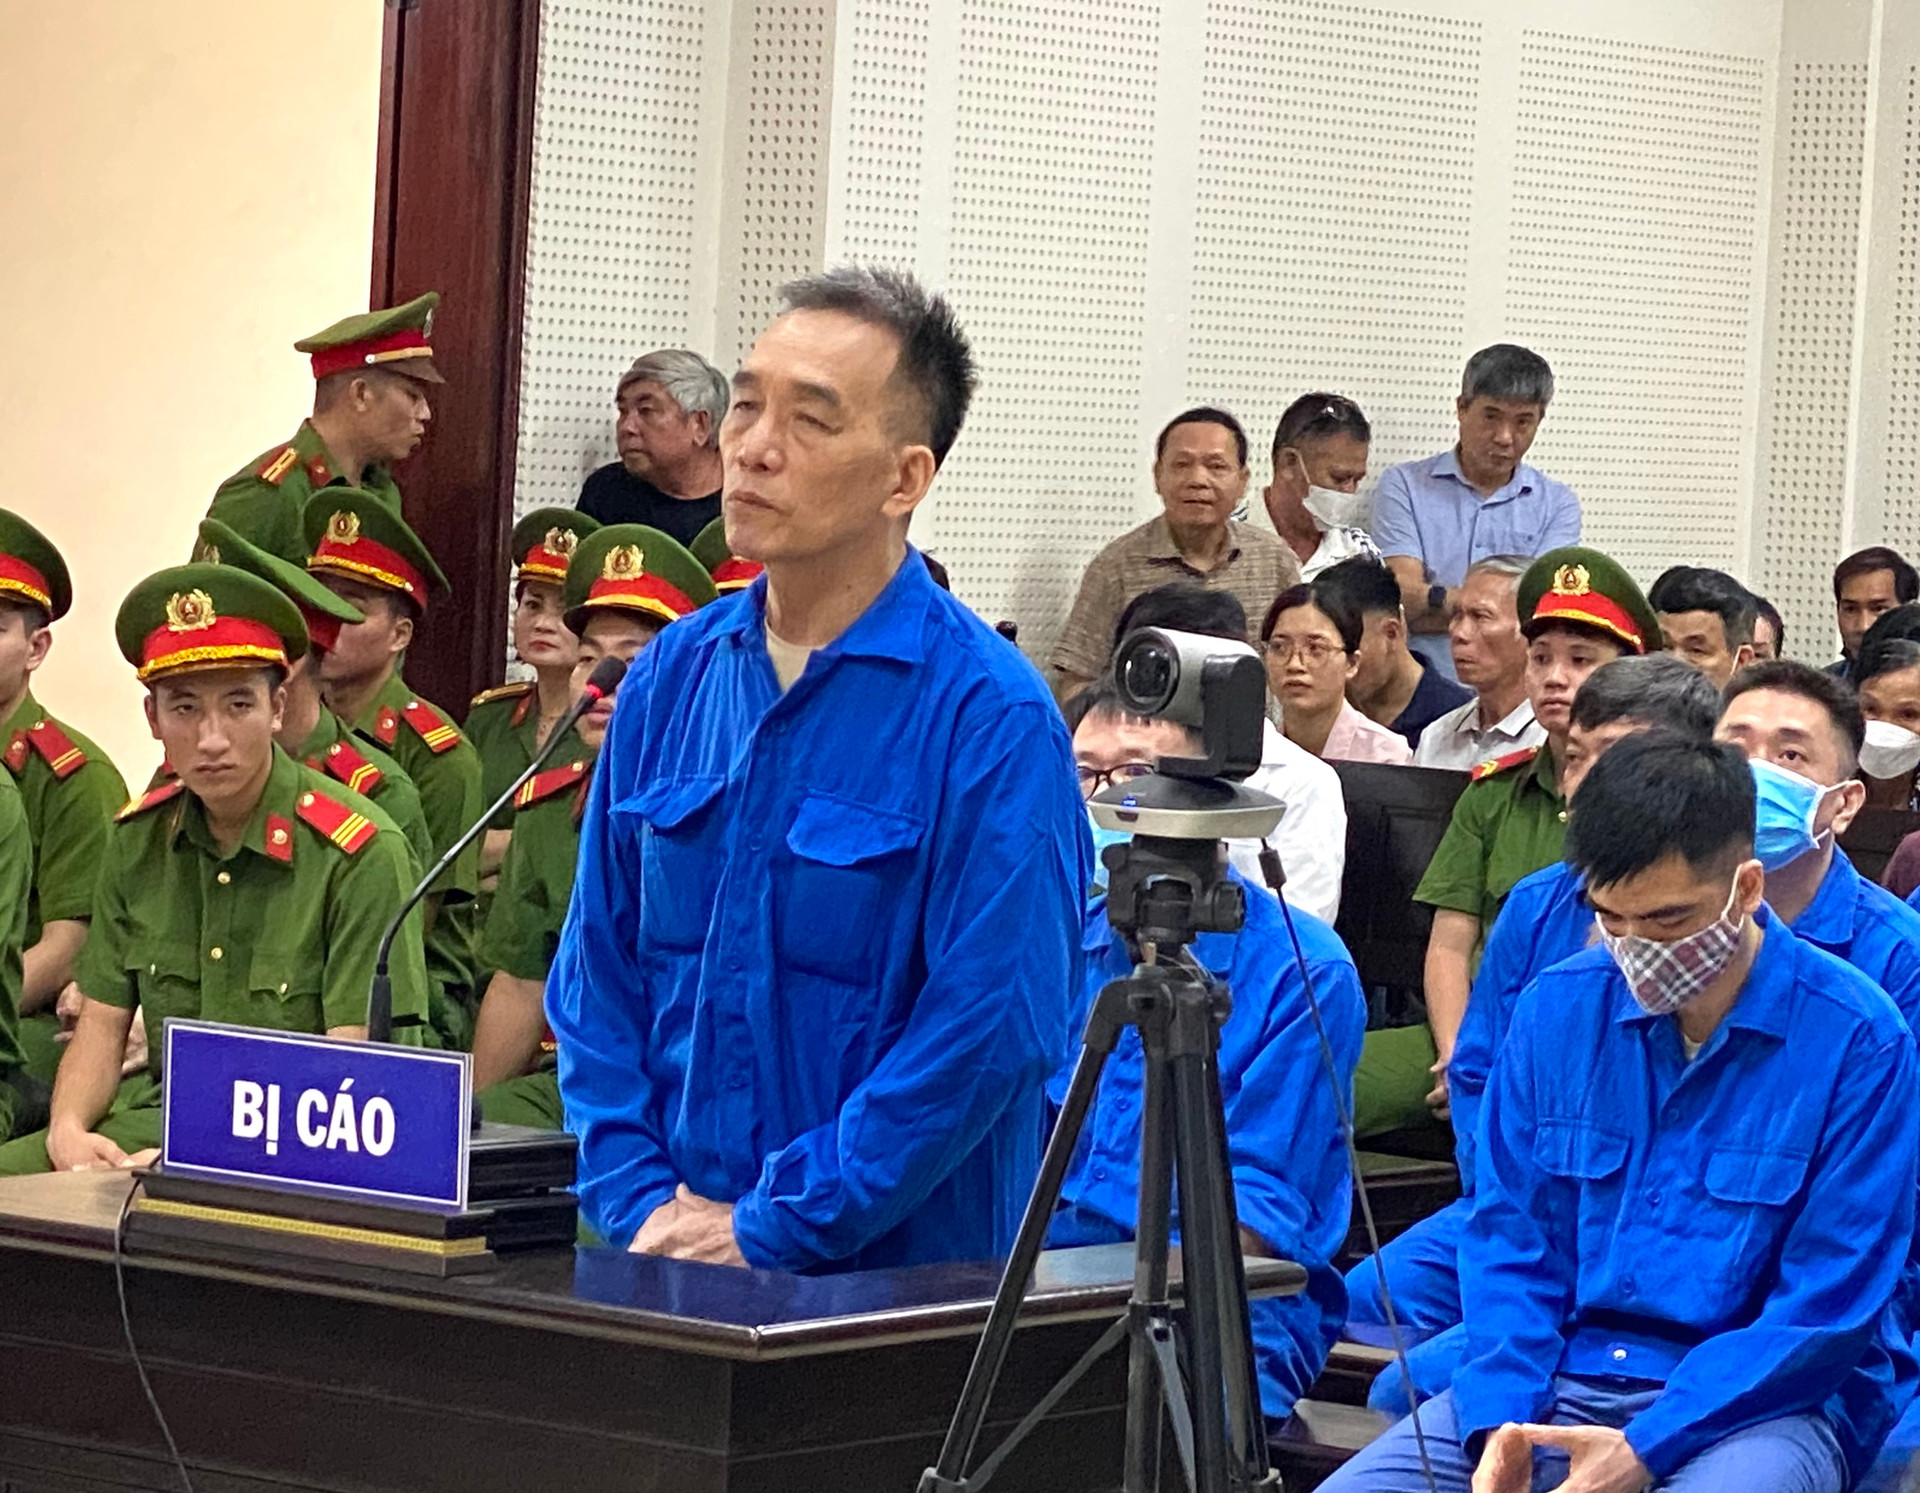 Cựu Giám đốc Sở GD&ĐT tỉnh Quảng Ninh và đồng bị tuyên phạt bao nhiêu năm tù? - Ảnh 3.